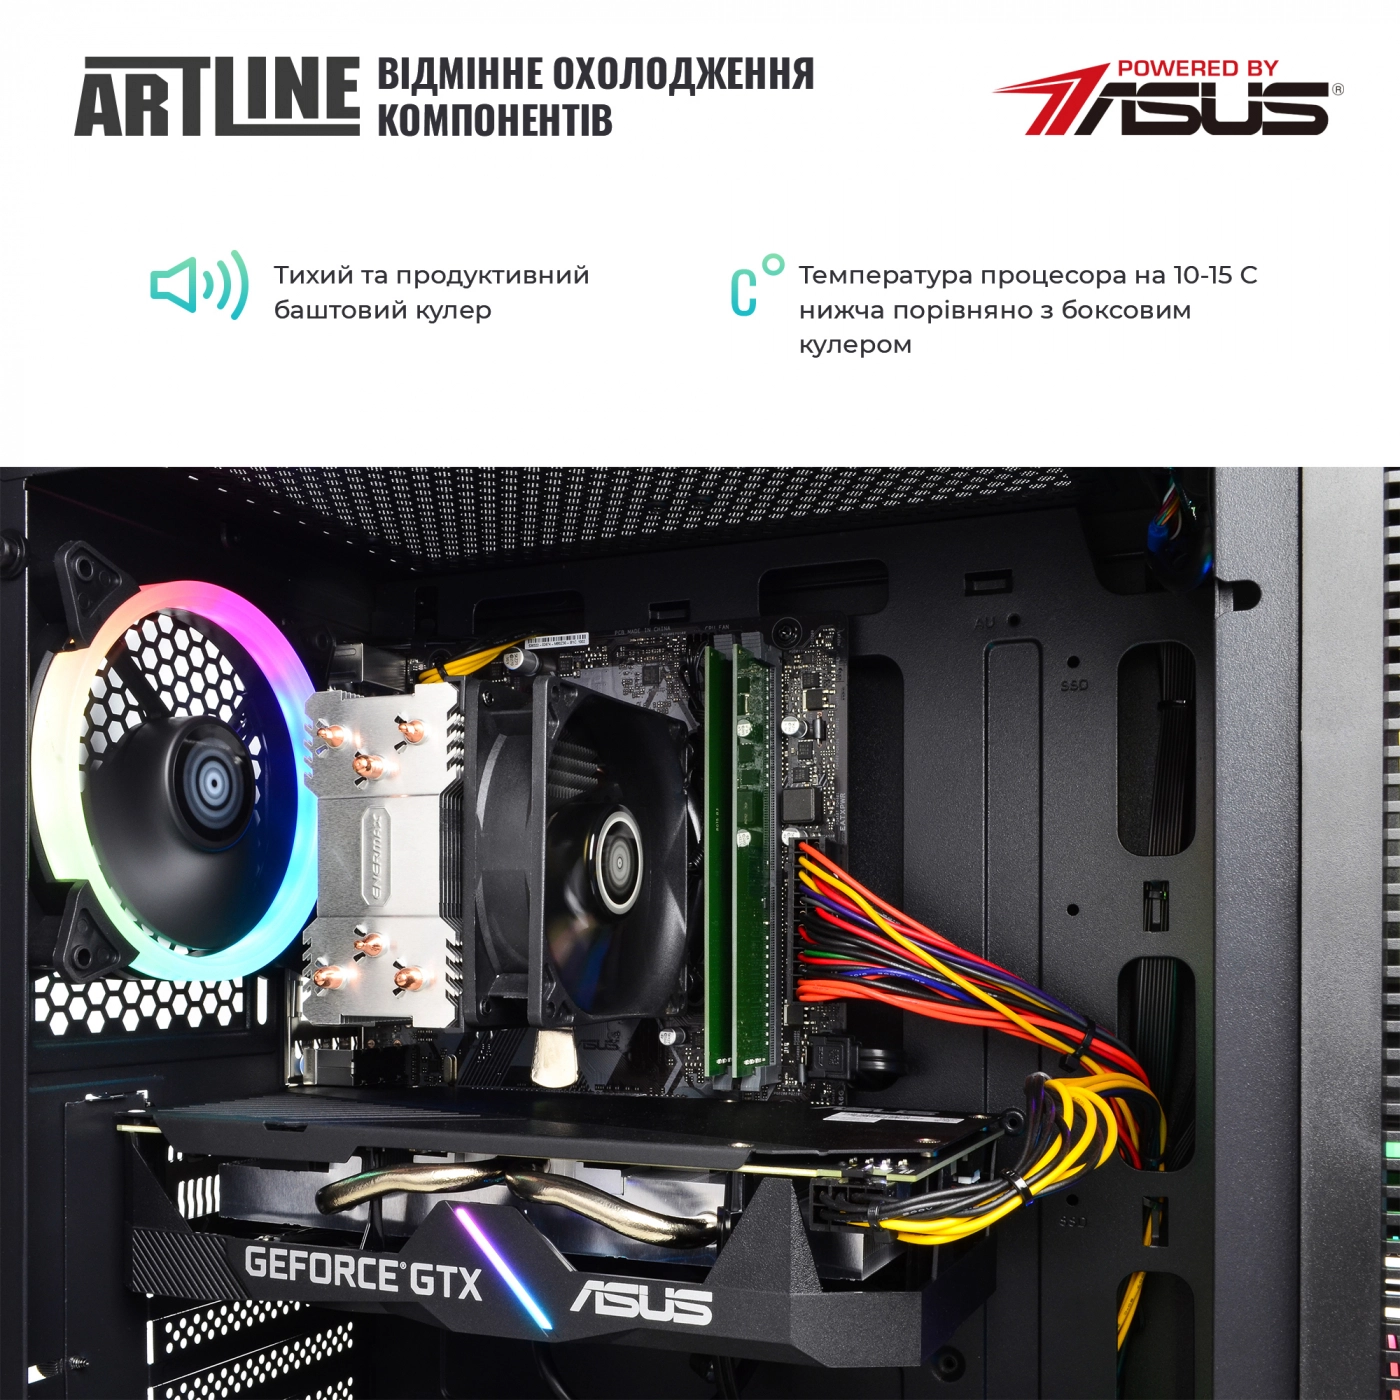 Купить Компьютер ARTLINE Gaming X65v33 - фото 3